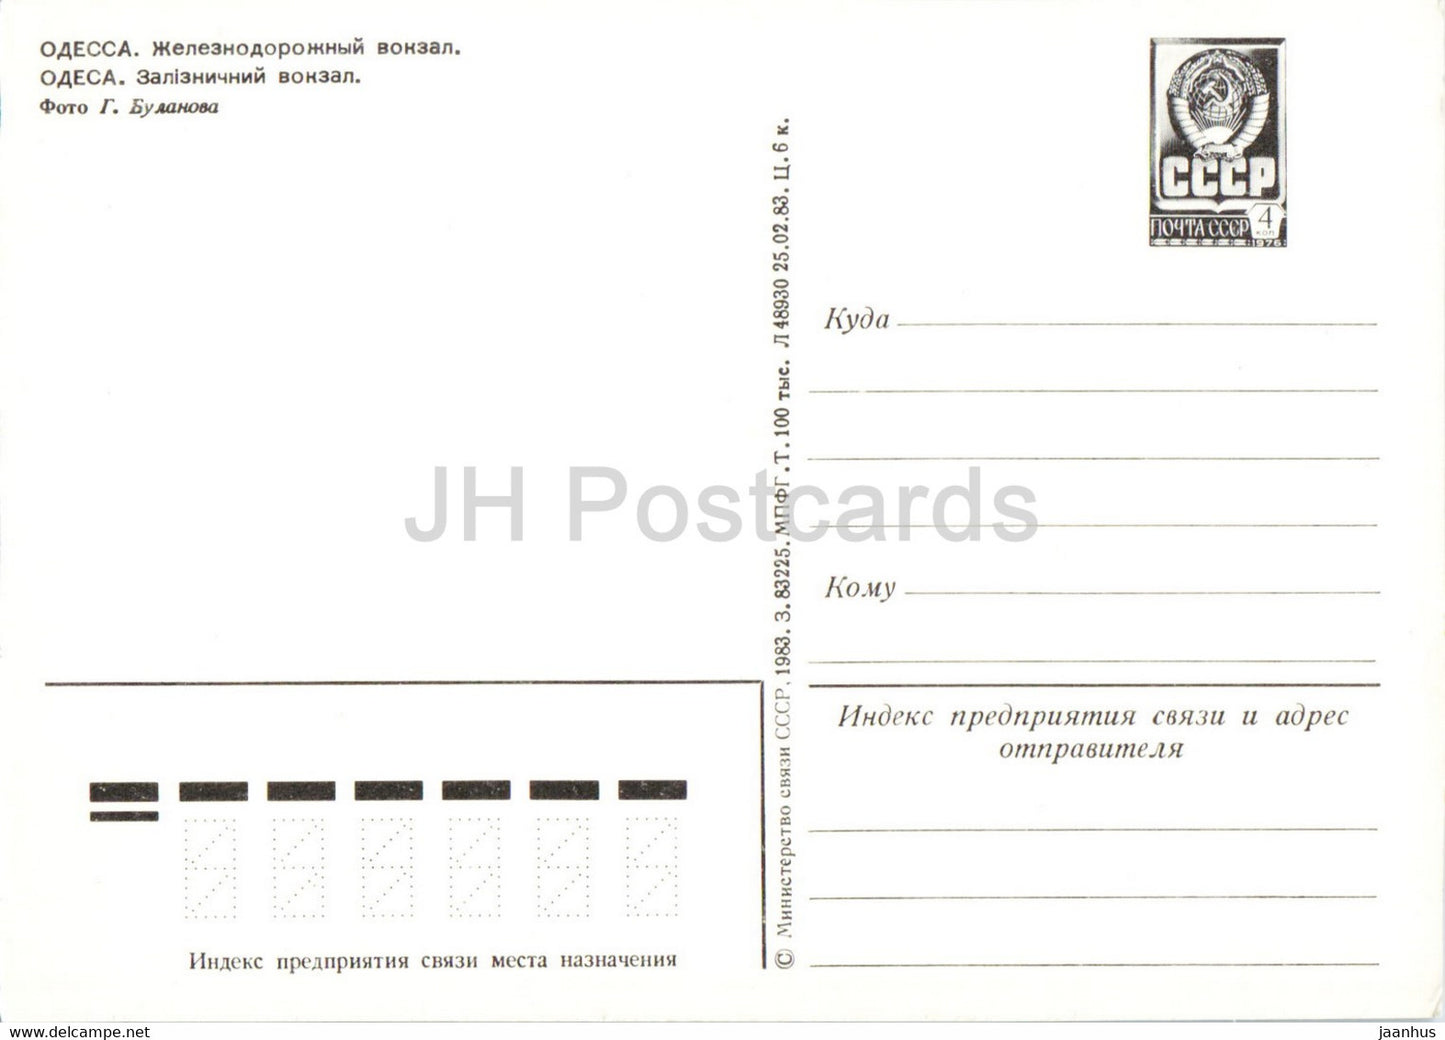 Odessa - Railway Station - postal stationery - 1983 - Ukraine USSR - unused